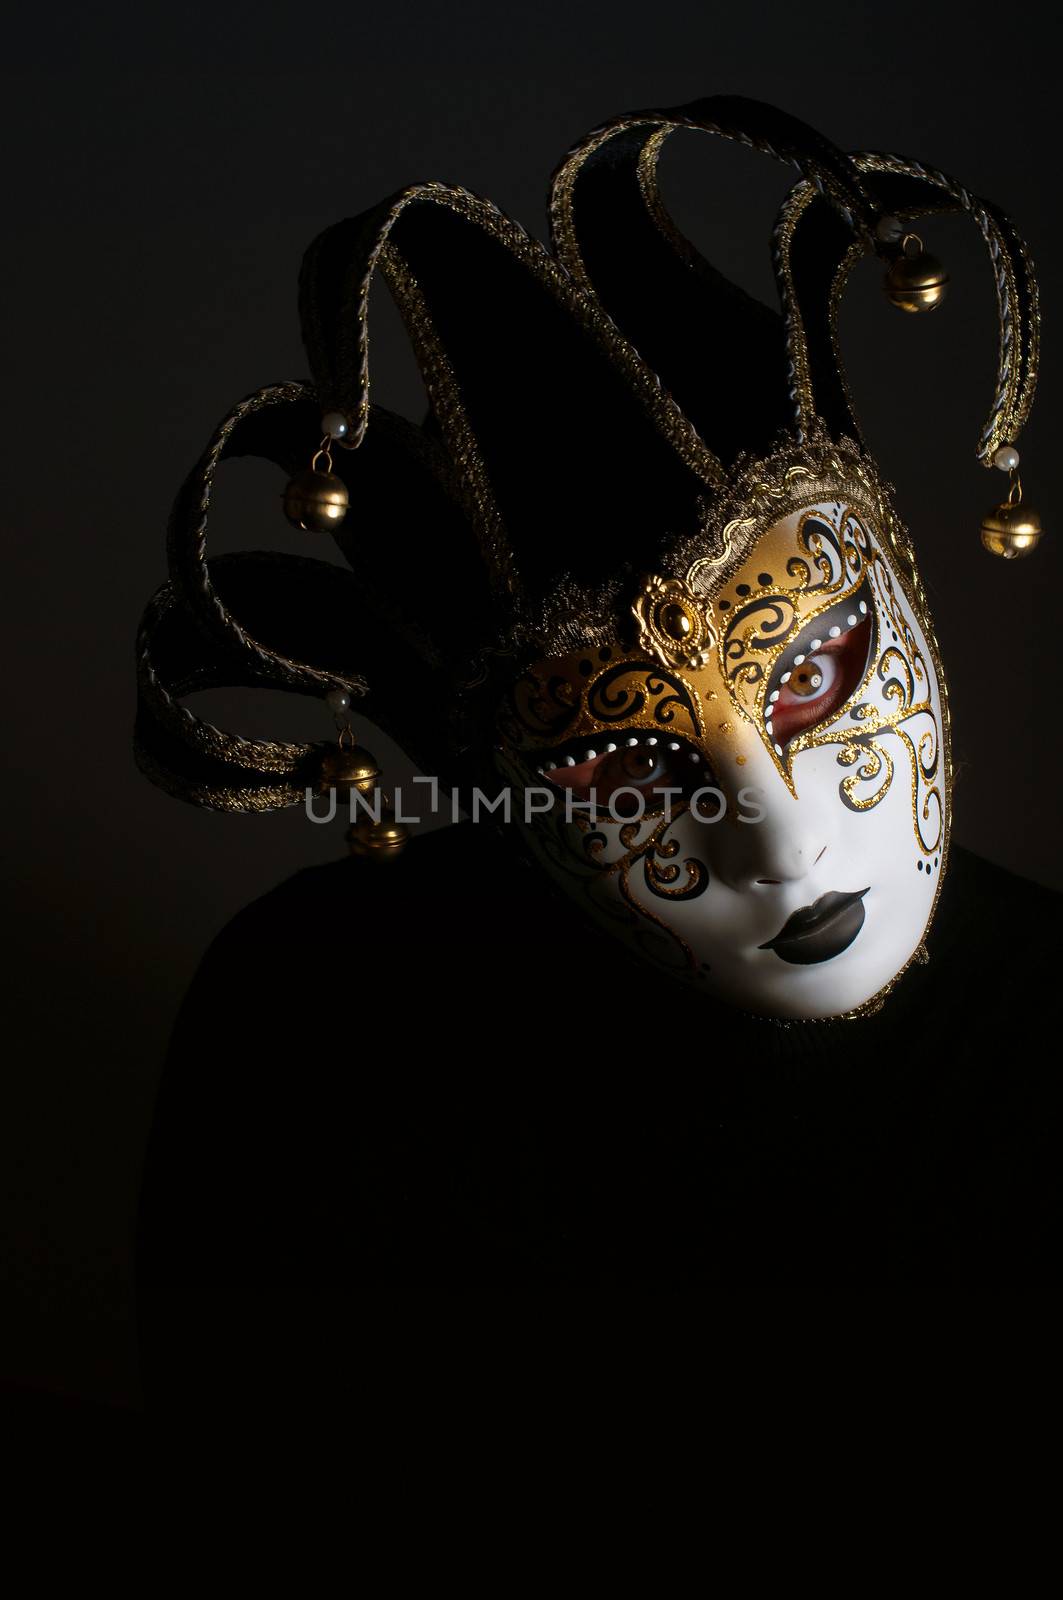 jester mask by sognolucido